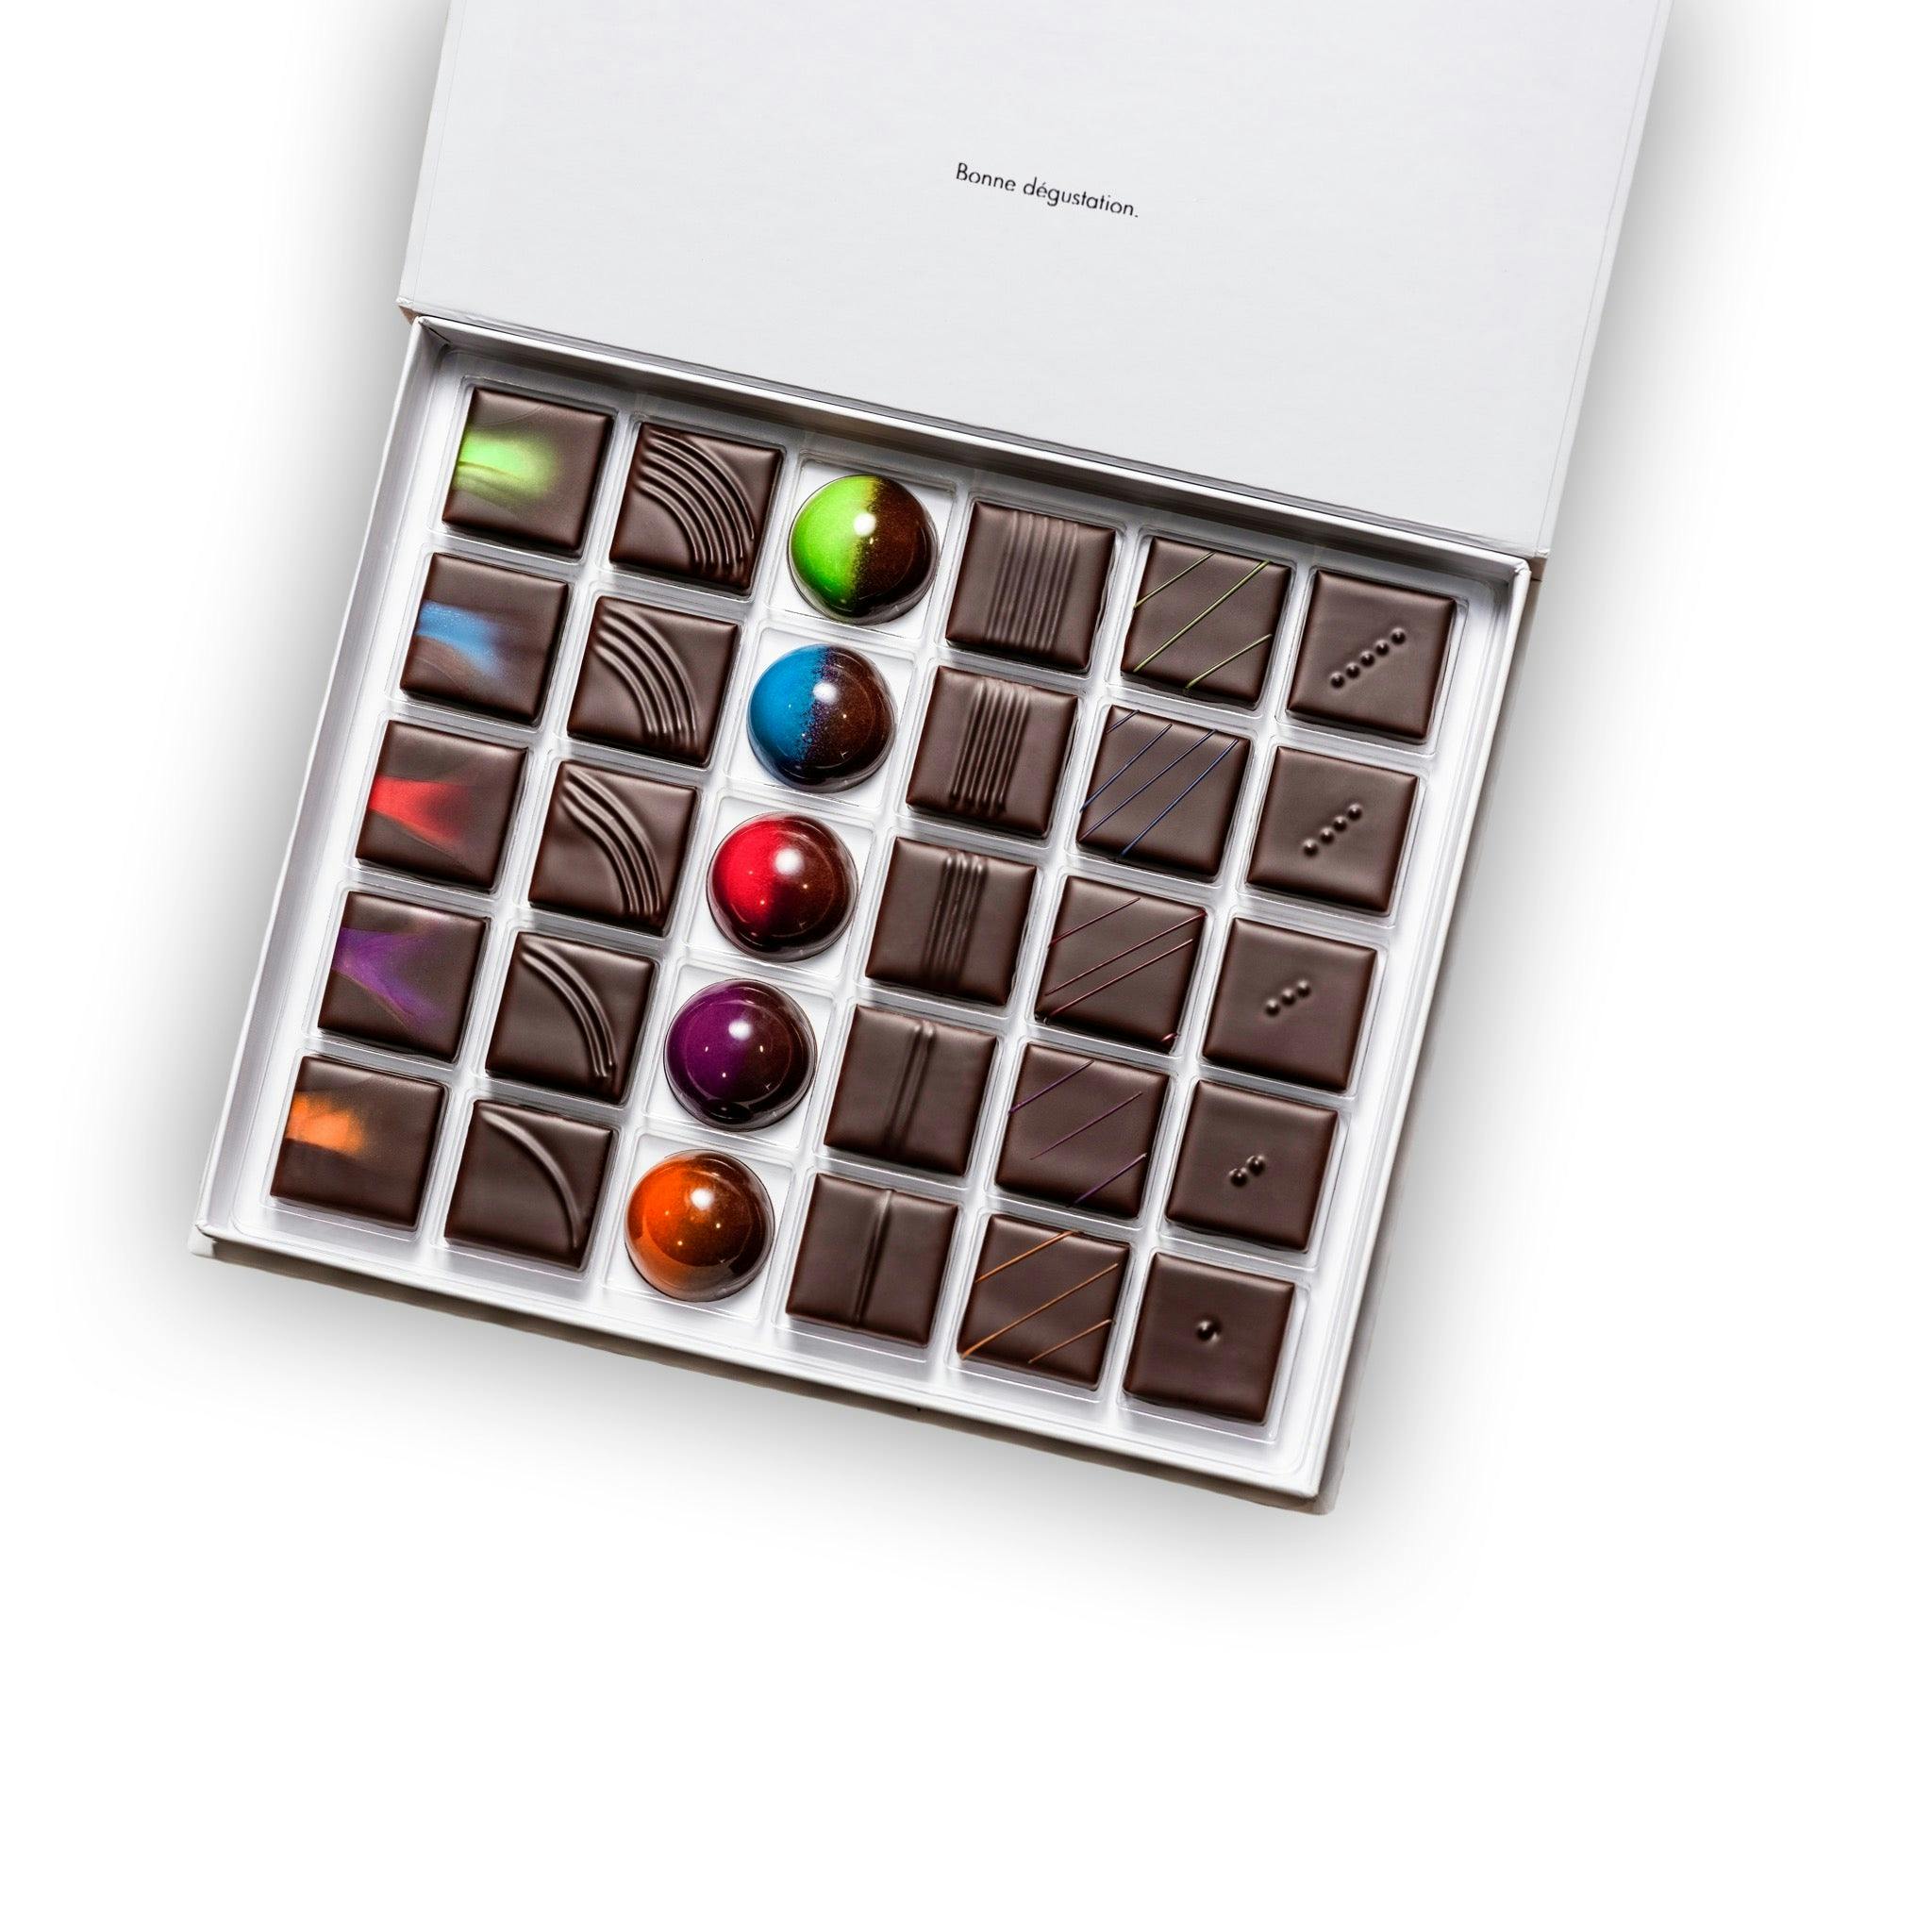 Coffrets de Chocolat - Vincent Vallée world champion chocolatier